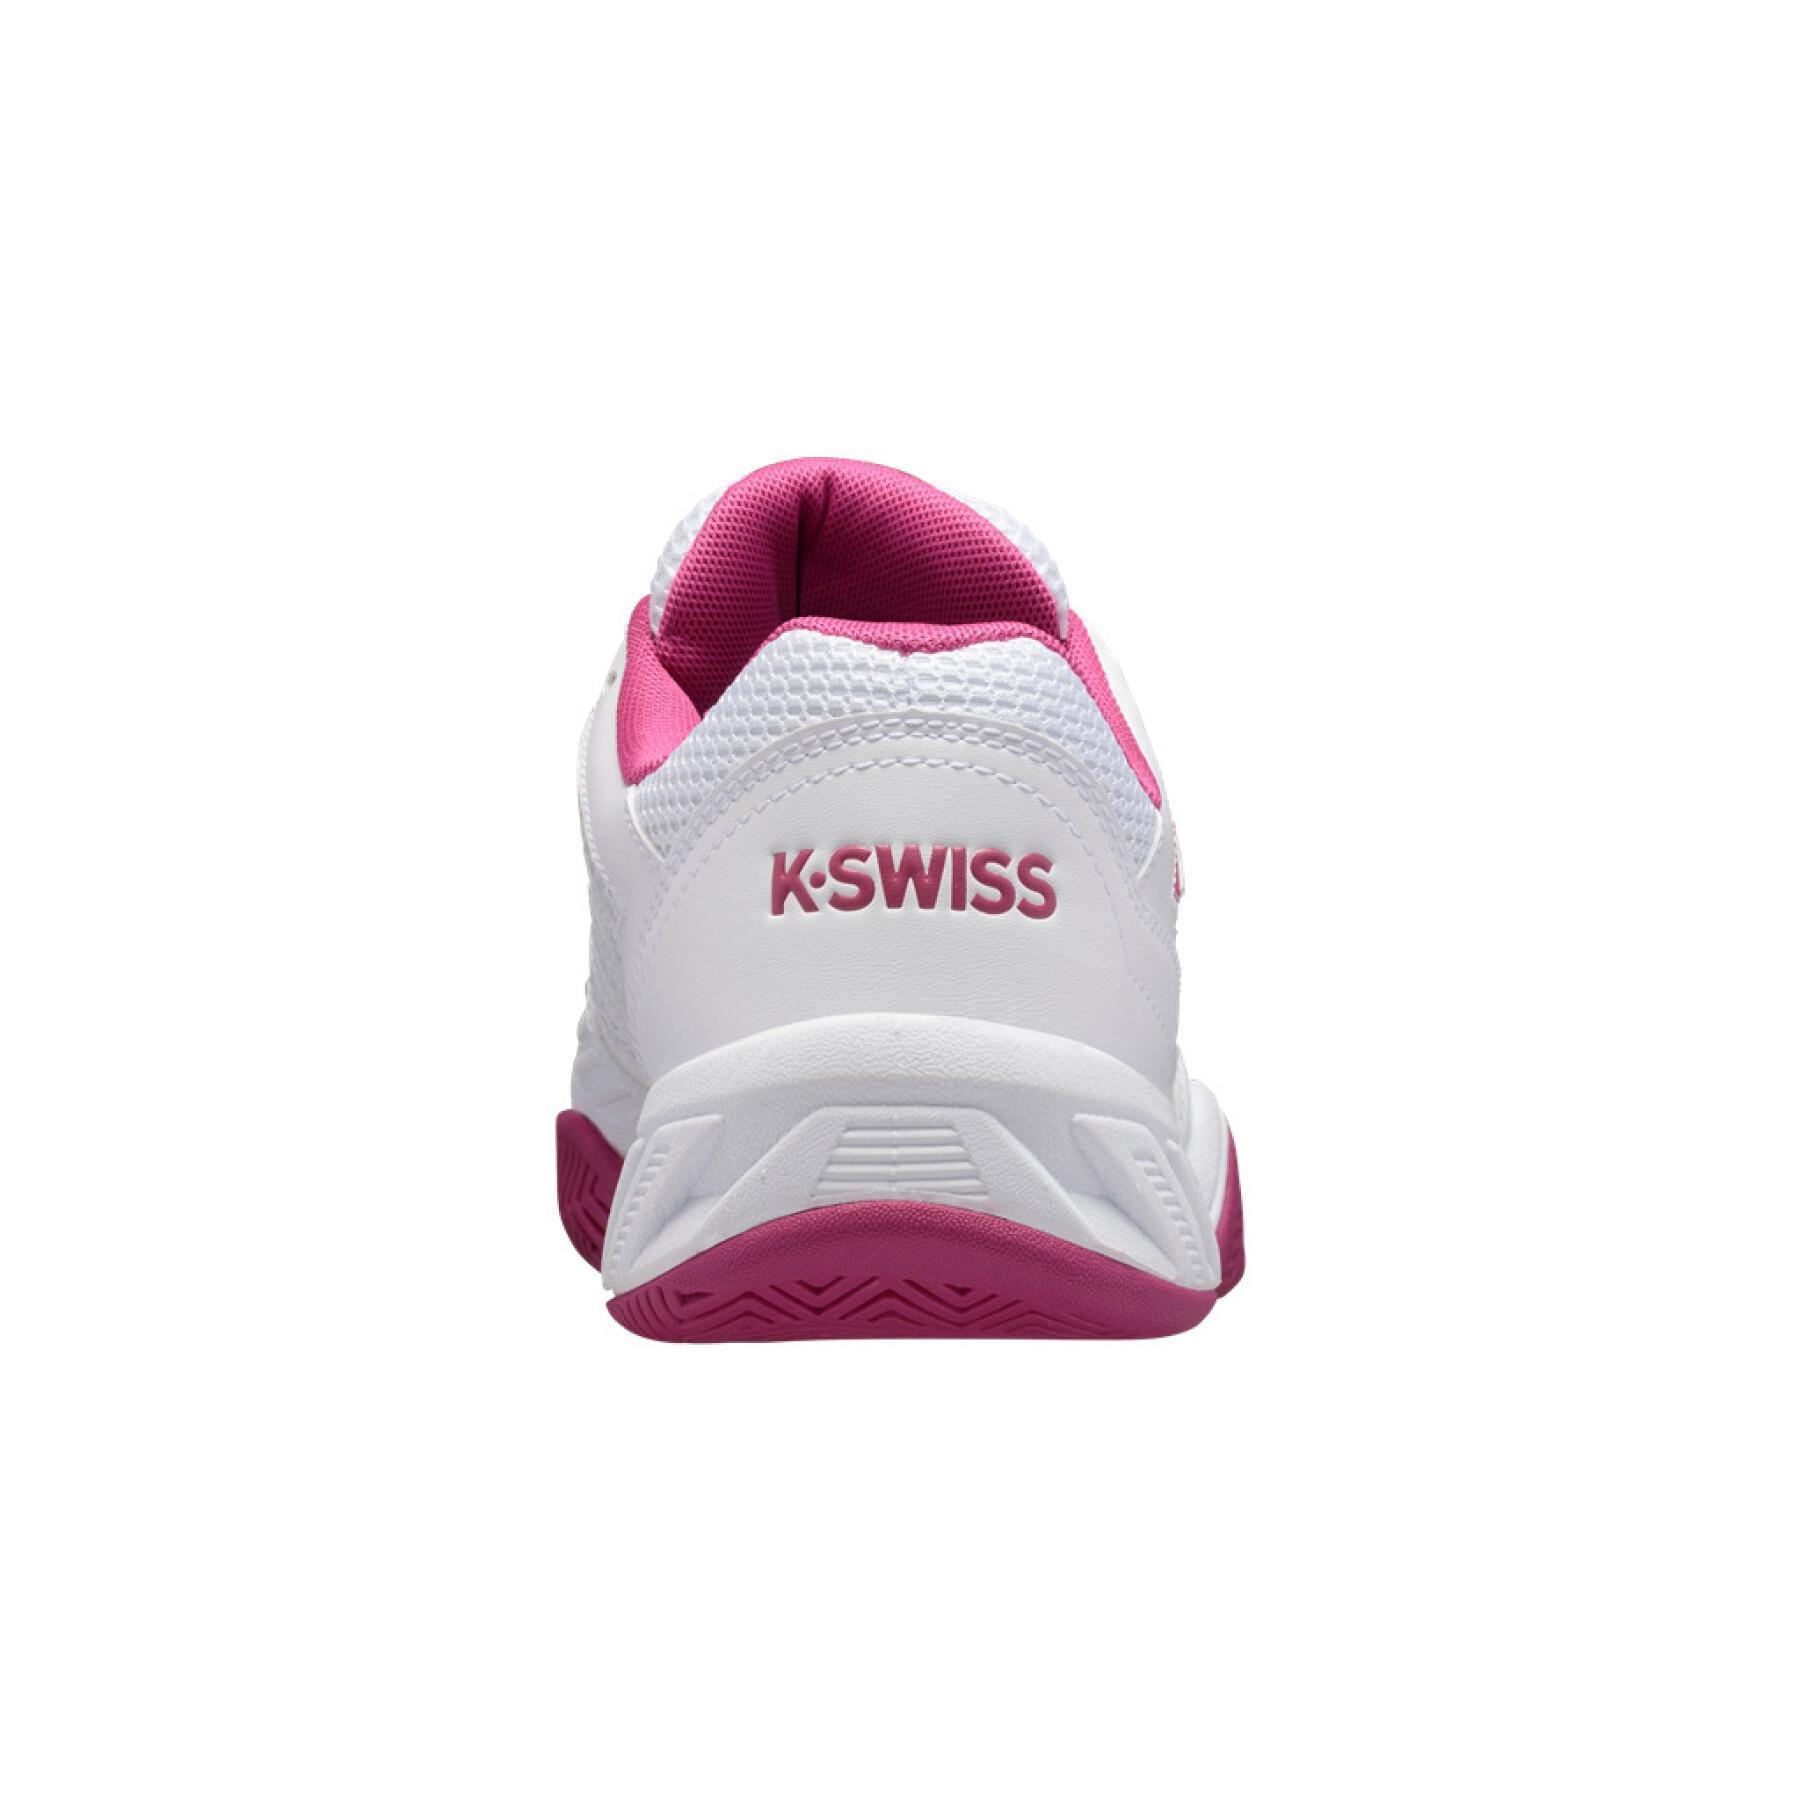 Chaussures femme K-Swiss bigshot light 3